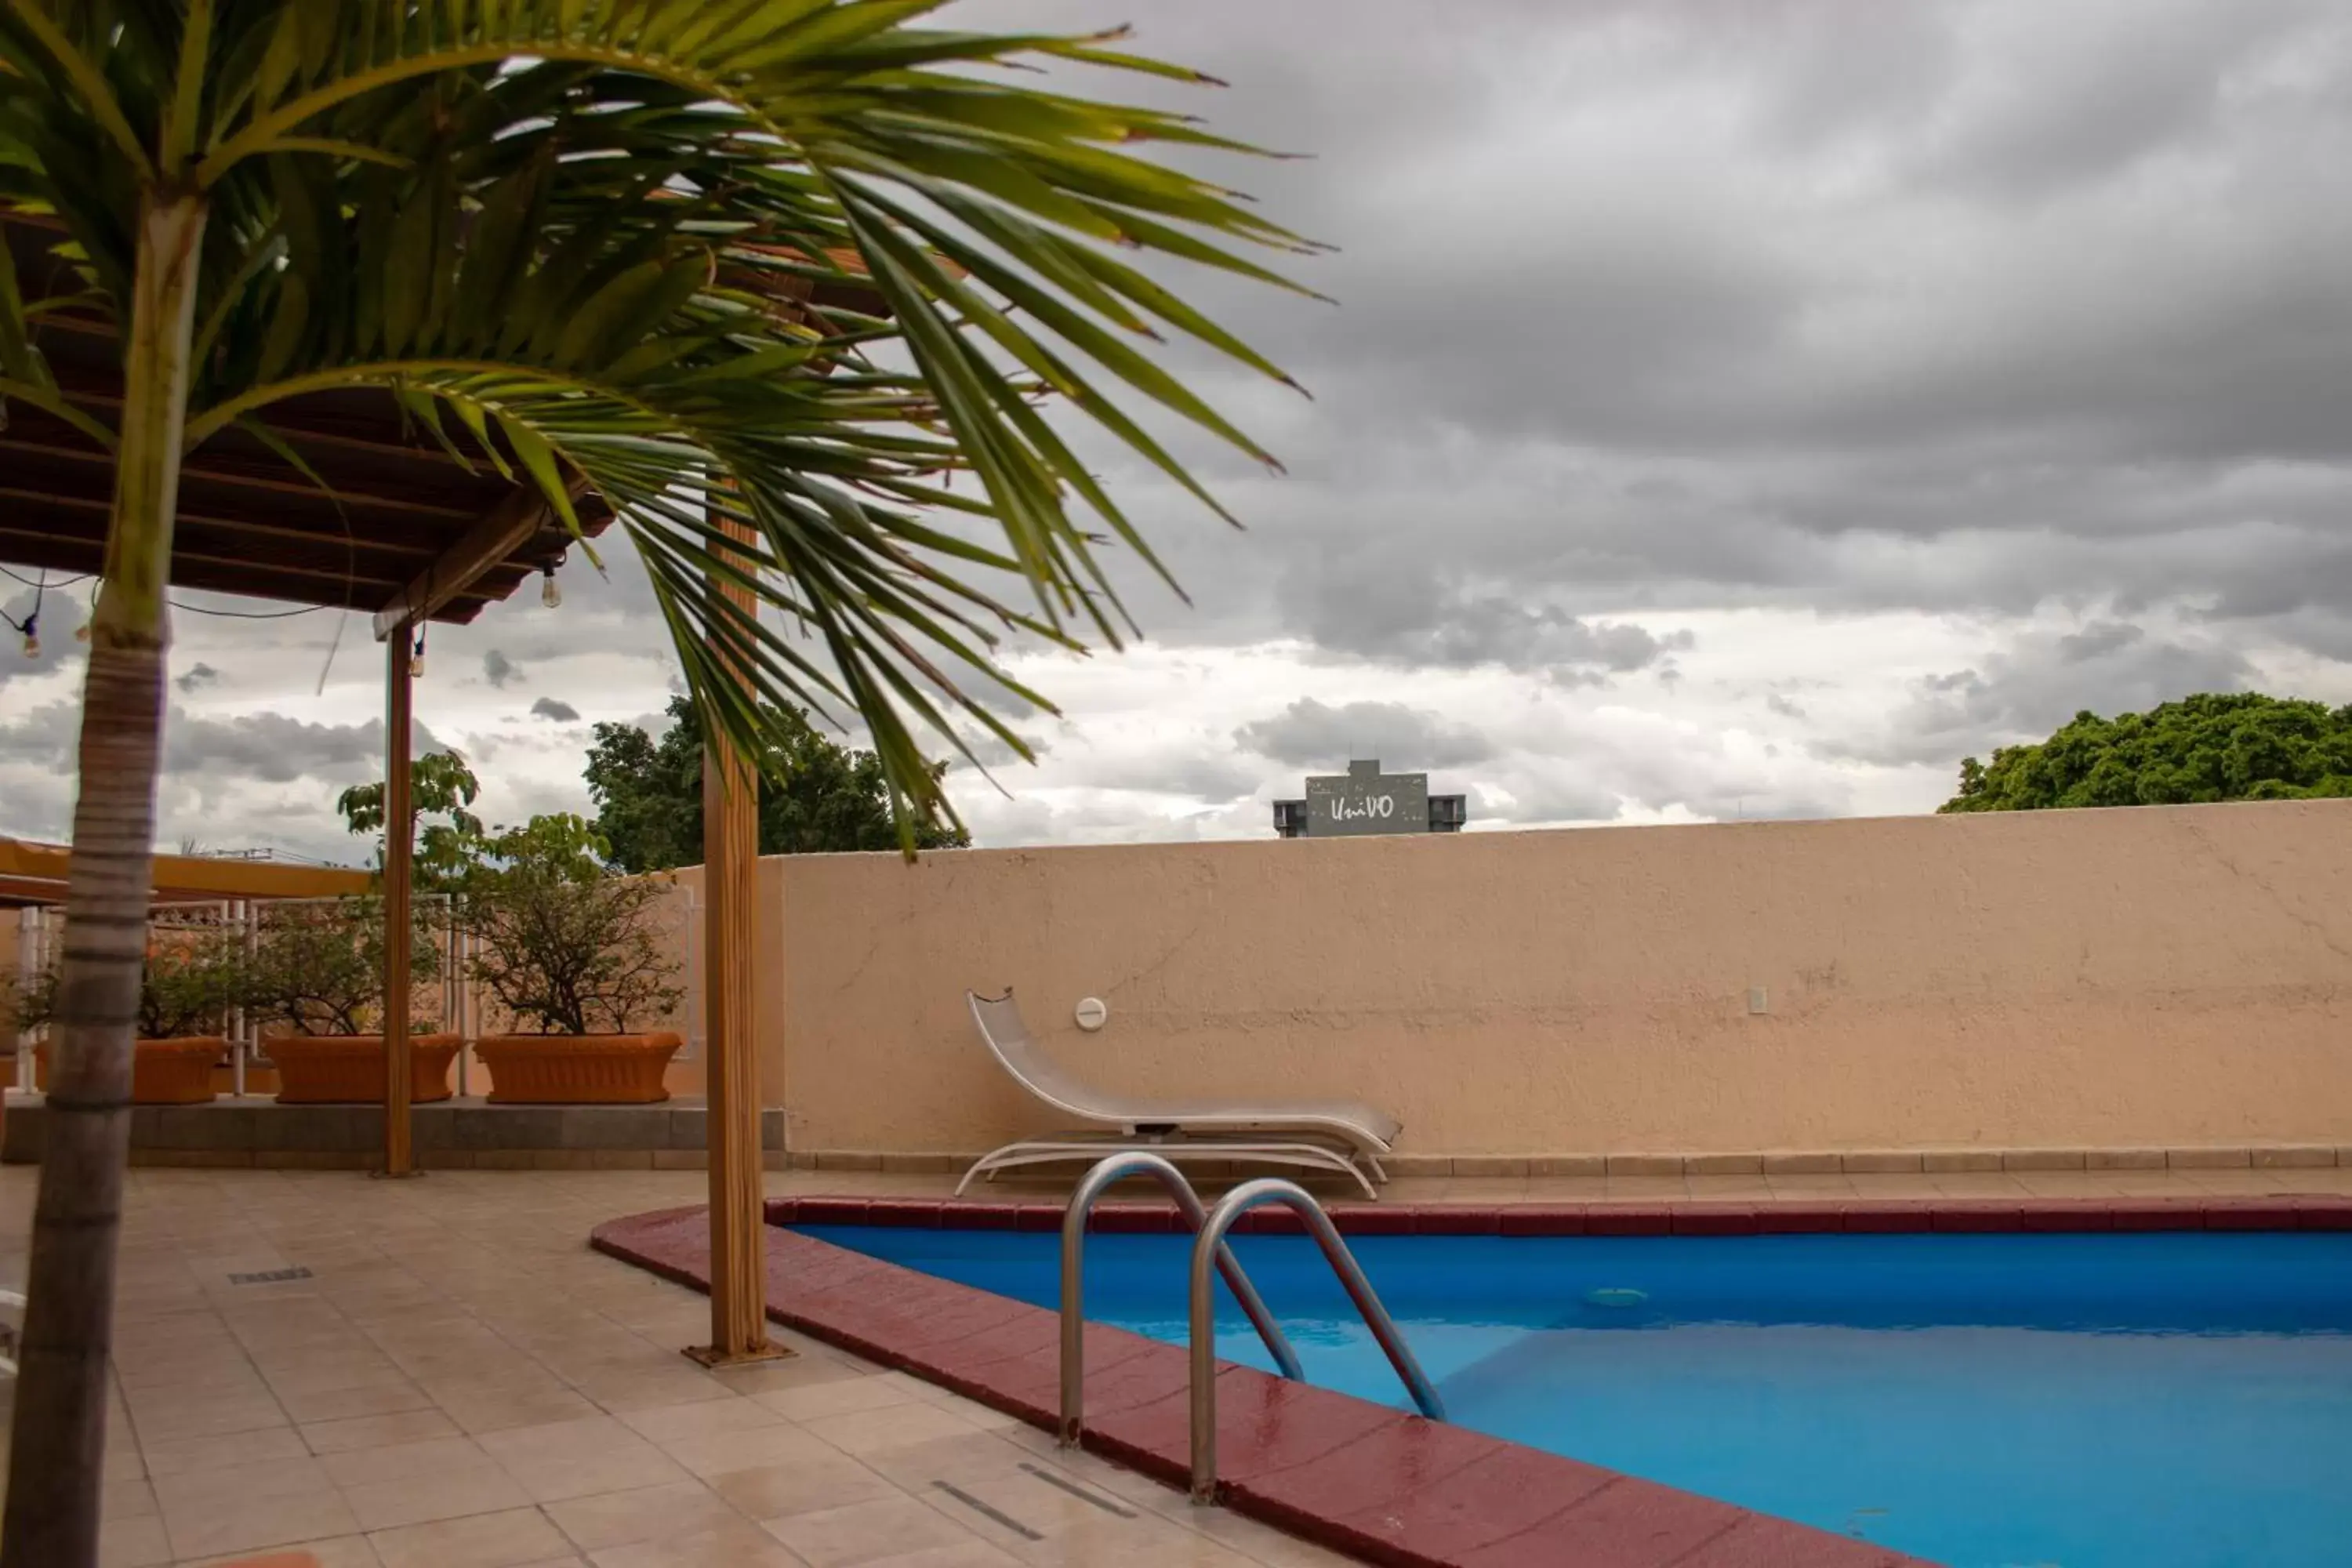 Swimming Pool in Hotel Santa Irene Guadalajara